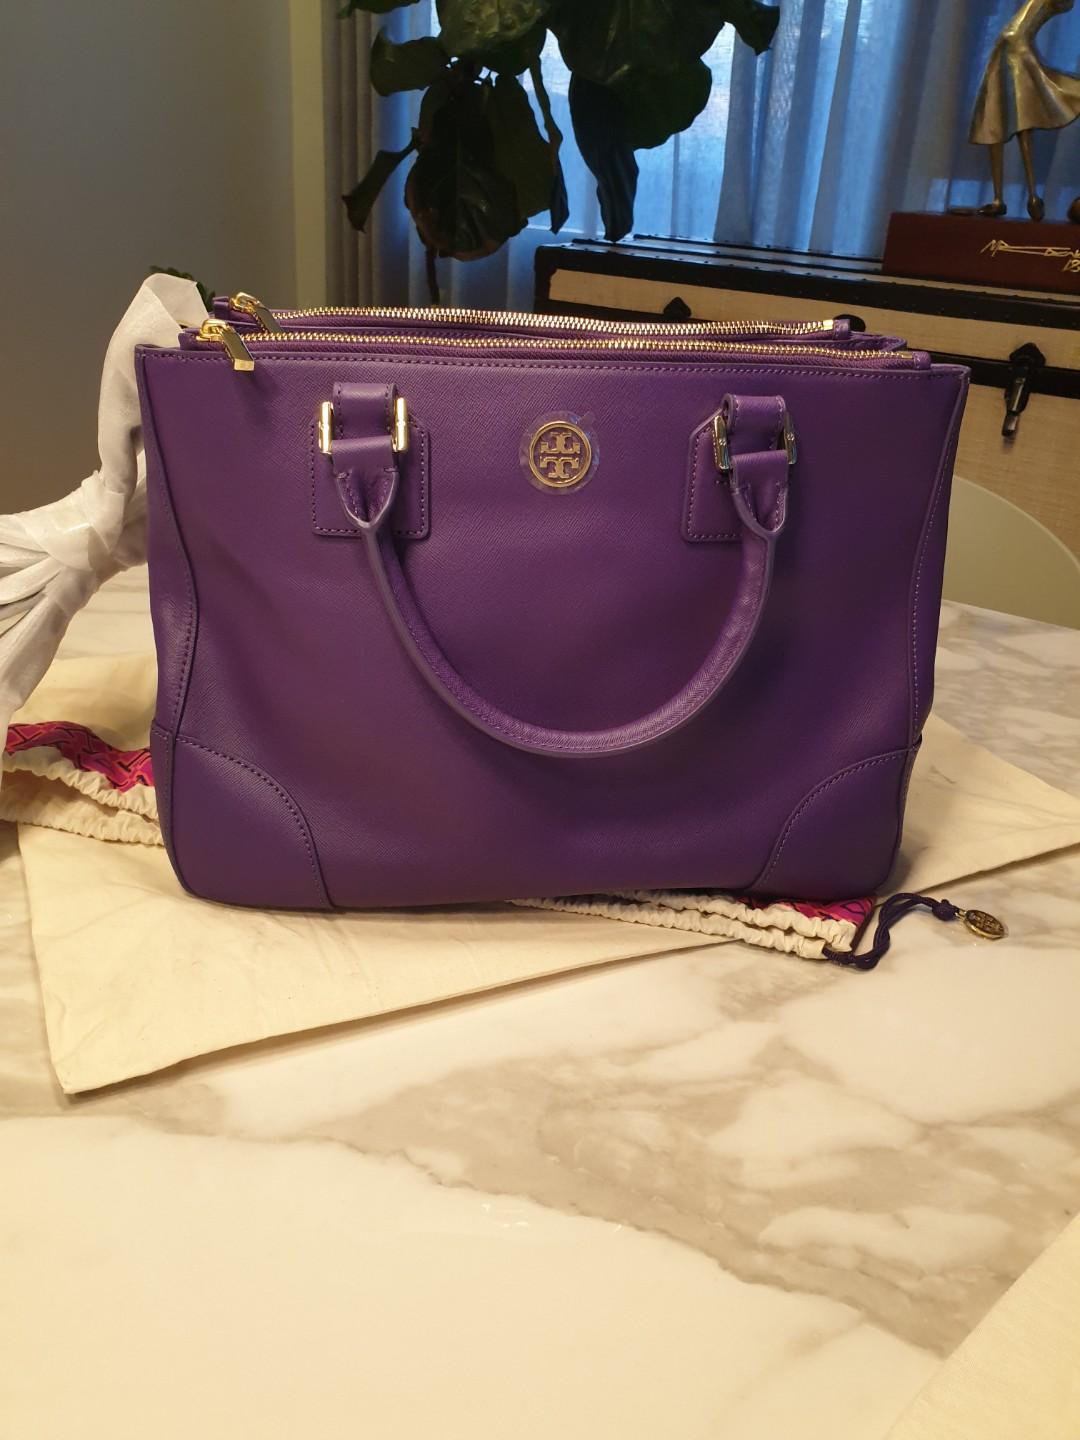 TORY BURCH purse - Women's handbags